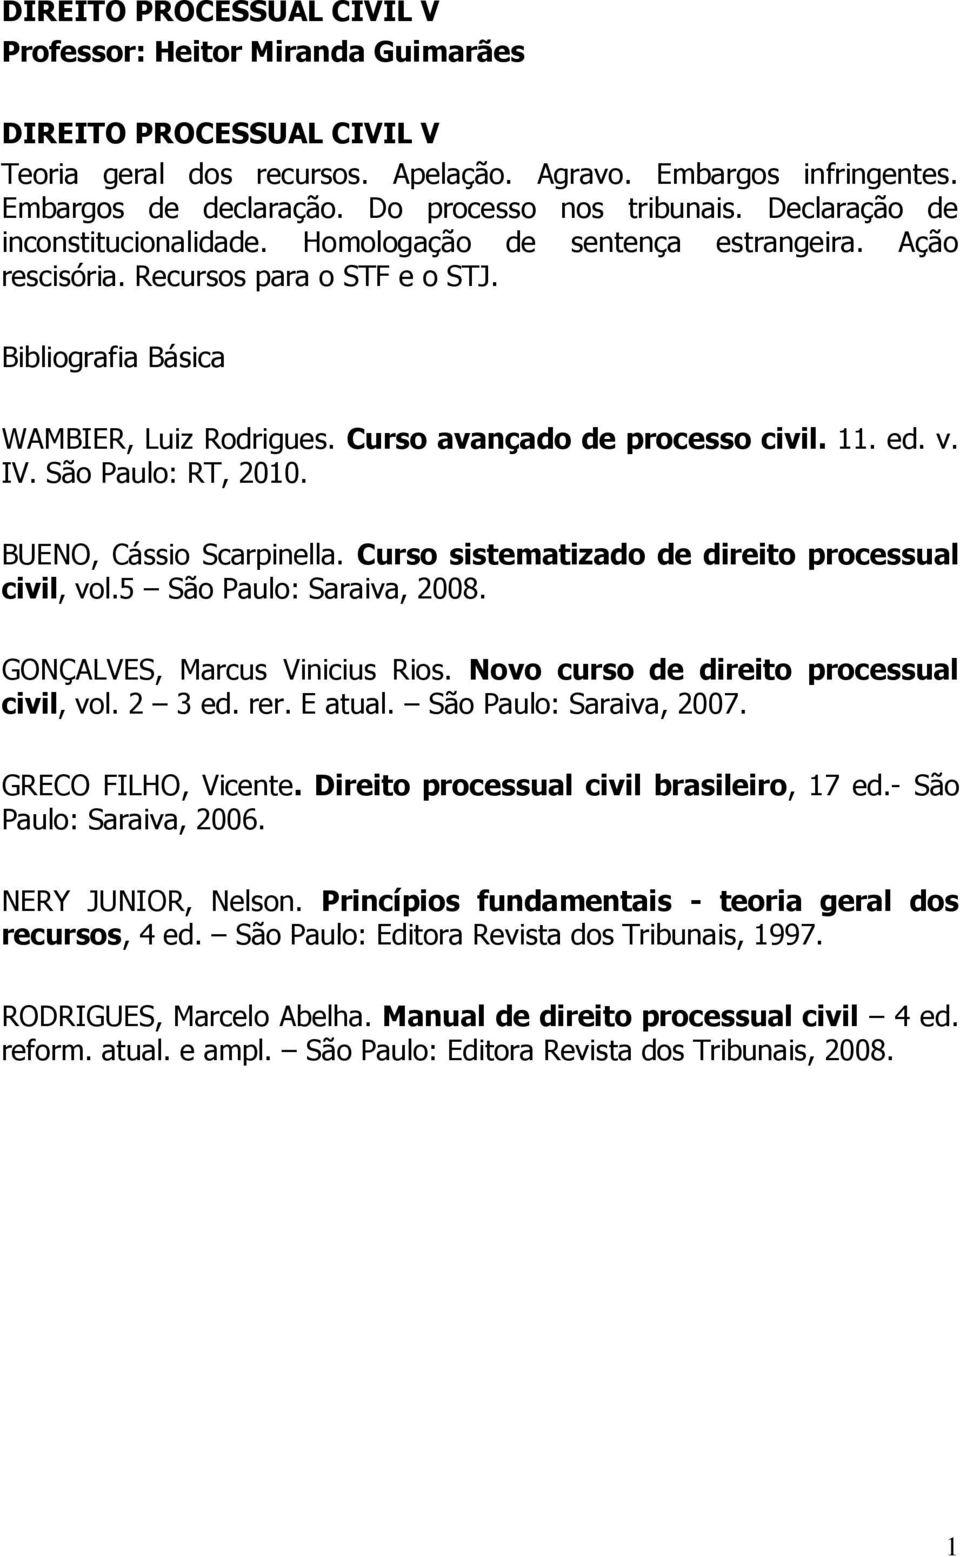 Curso avançado de processo civil. 11. ed. v. IV. São Paulo: RT, 2010. BUENO, Cássio Scarpinella. Curso sistematizado de direito processual civil, vol.5 São Paulo: Saraiva, 2008.